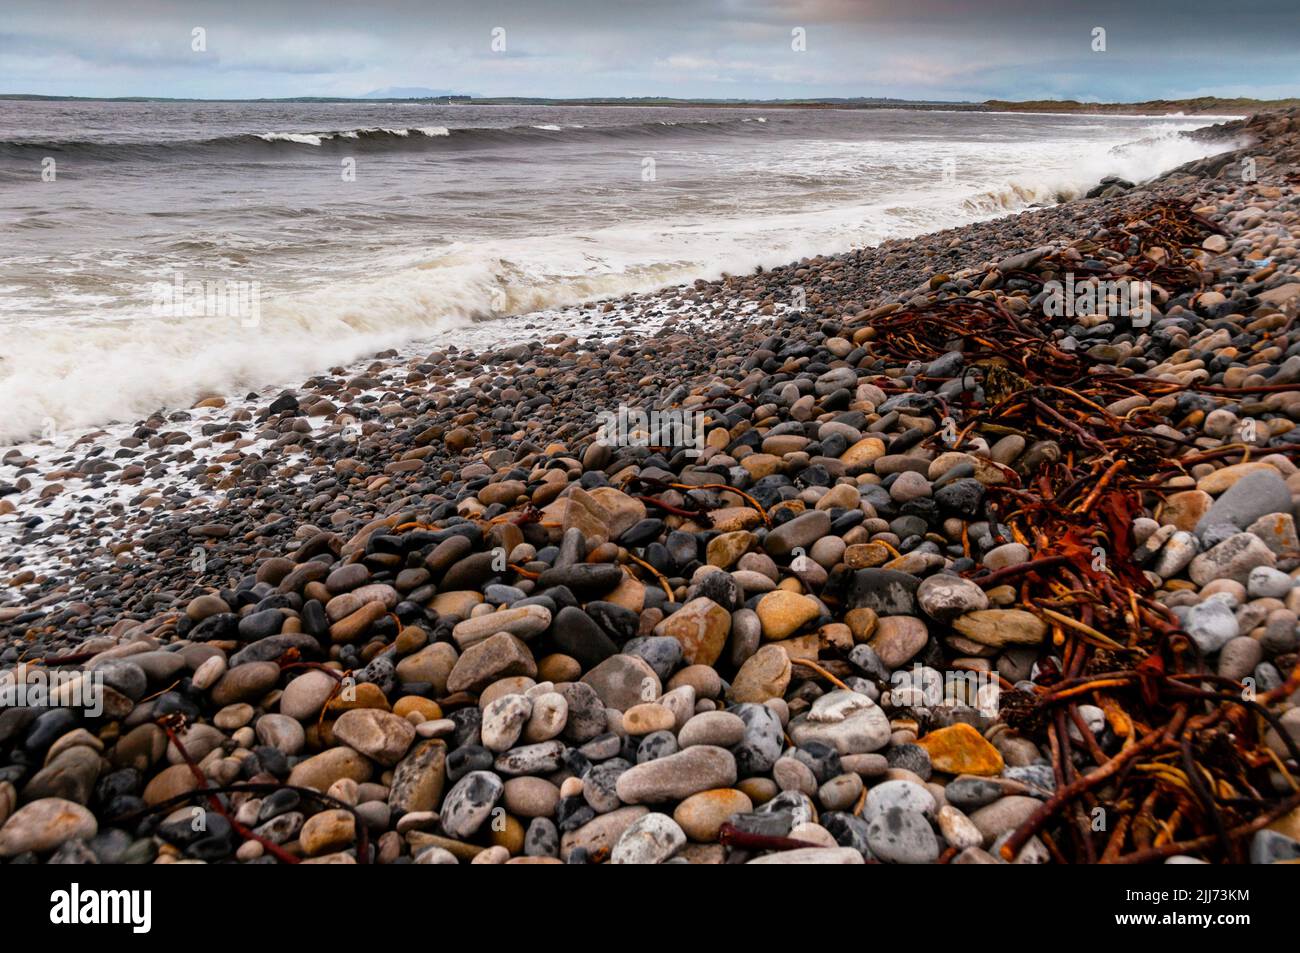 Strandhill Beach in Ireland. Stock Photo